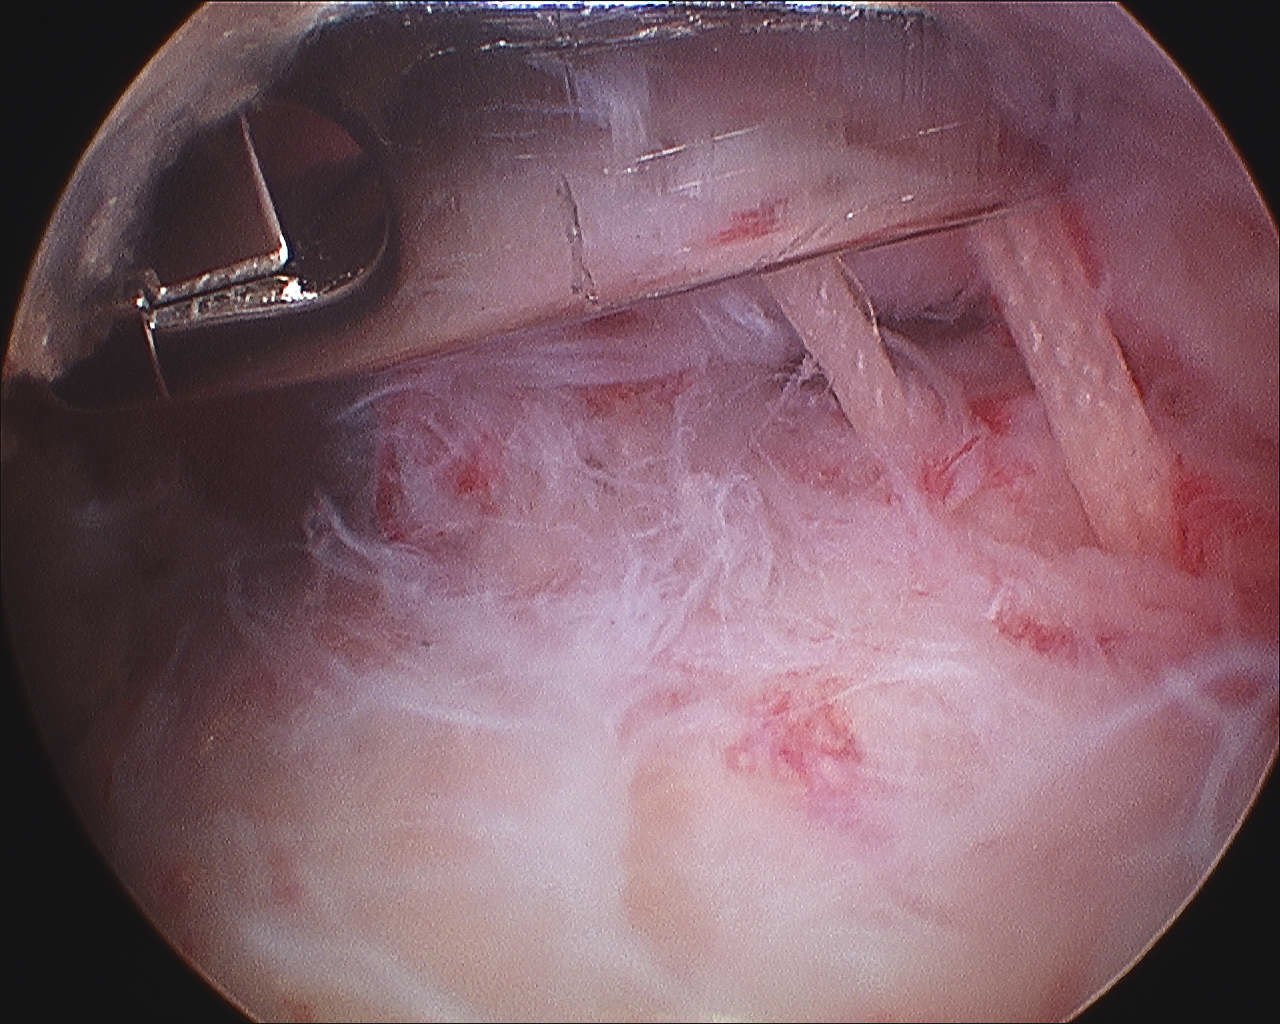 Shoulder PASTA Repair Sutures in Subacromial Space